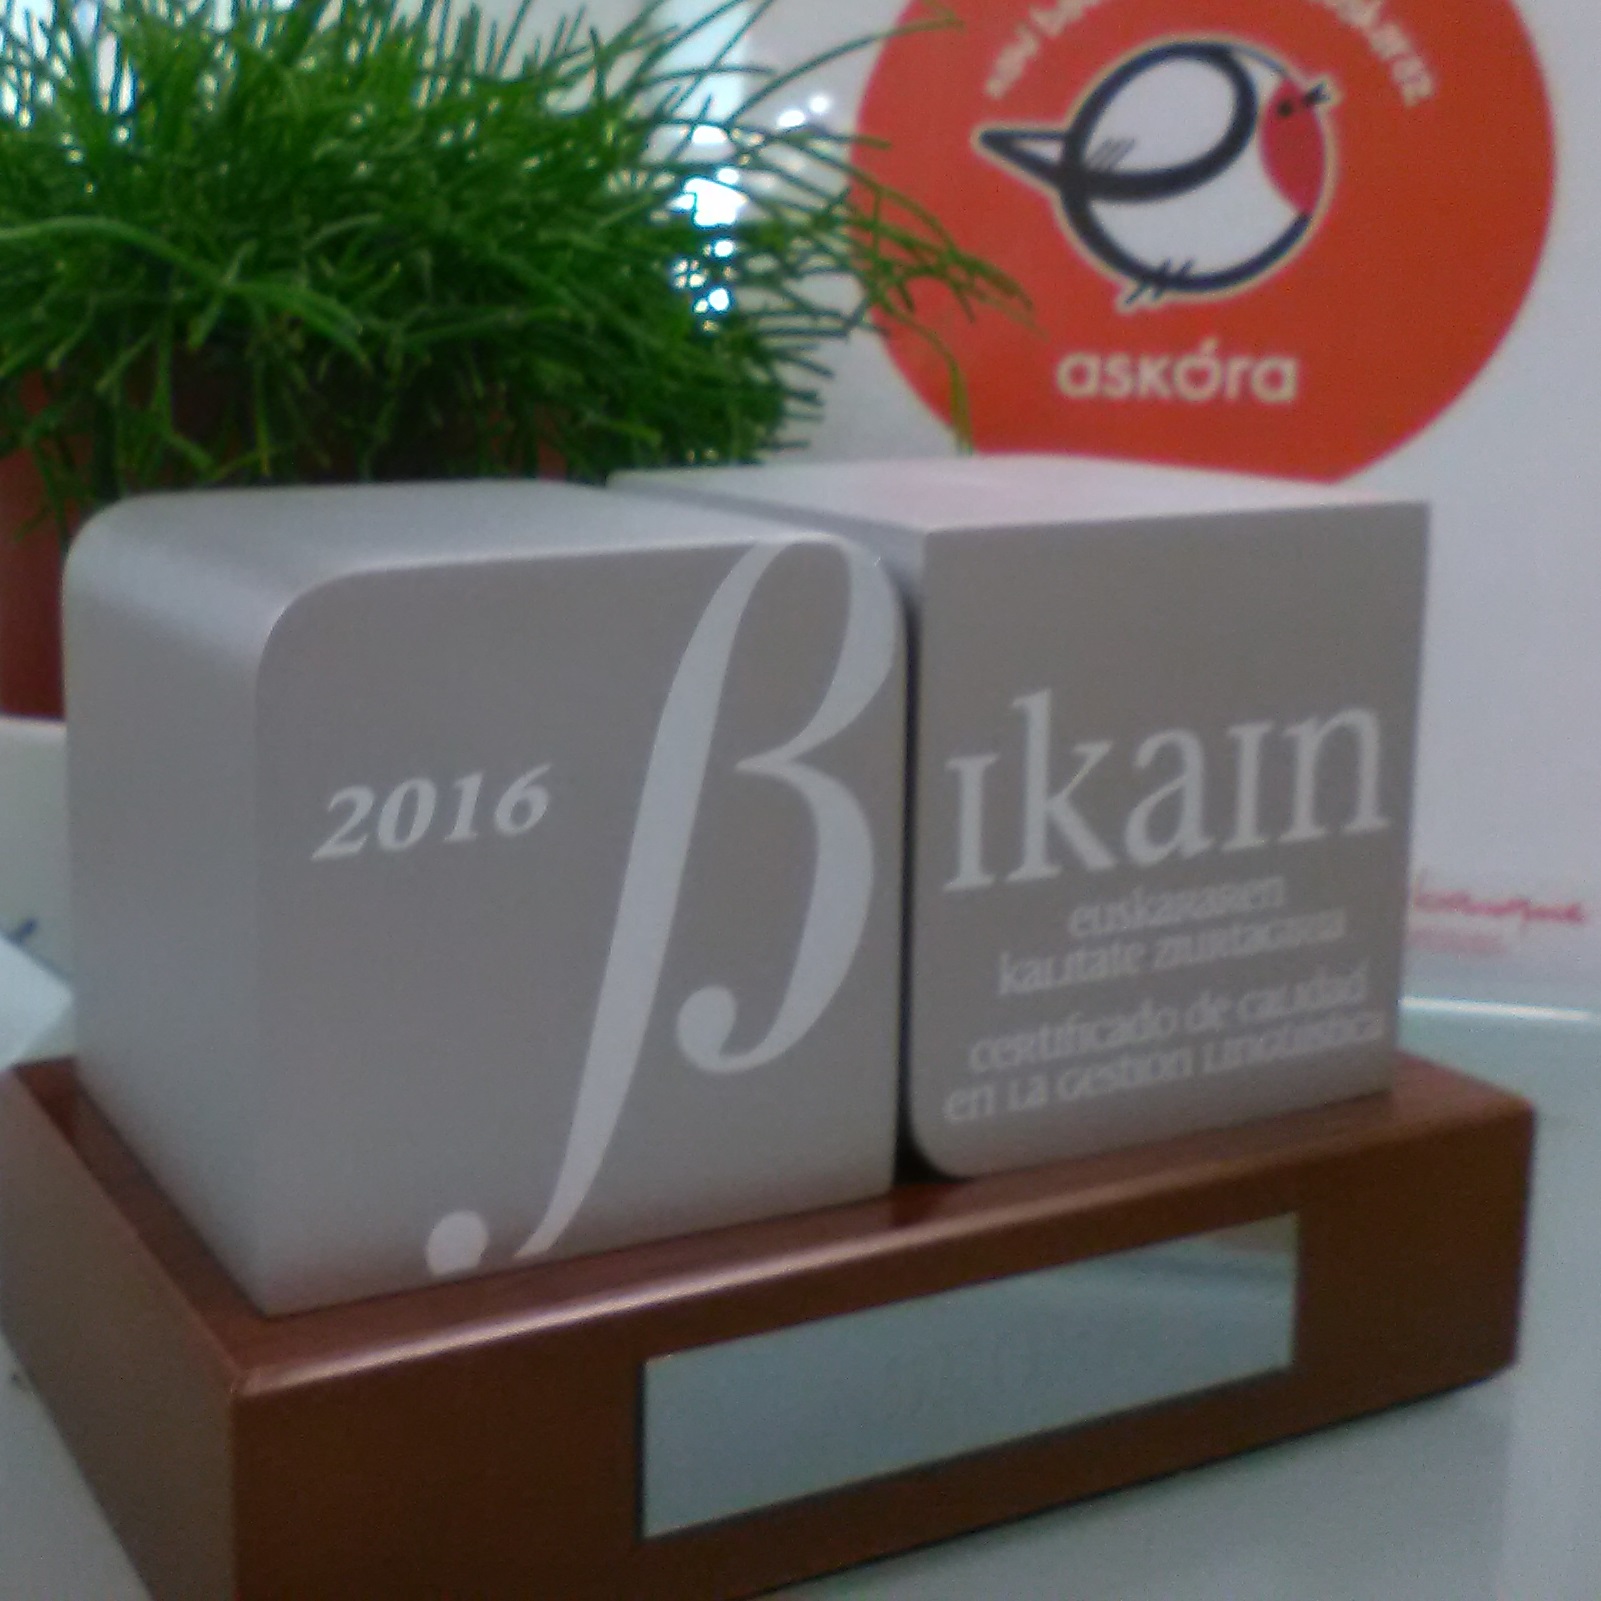 ASKORA obtiene el certificado BIKAIN en su categoría de plata